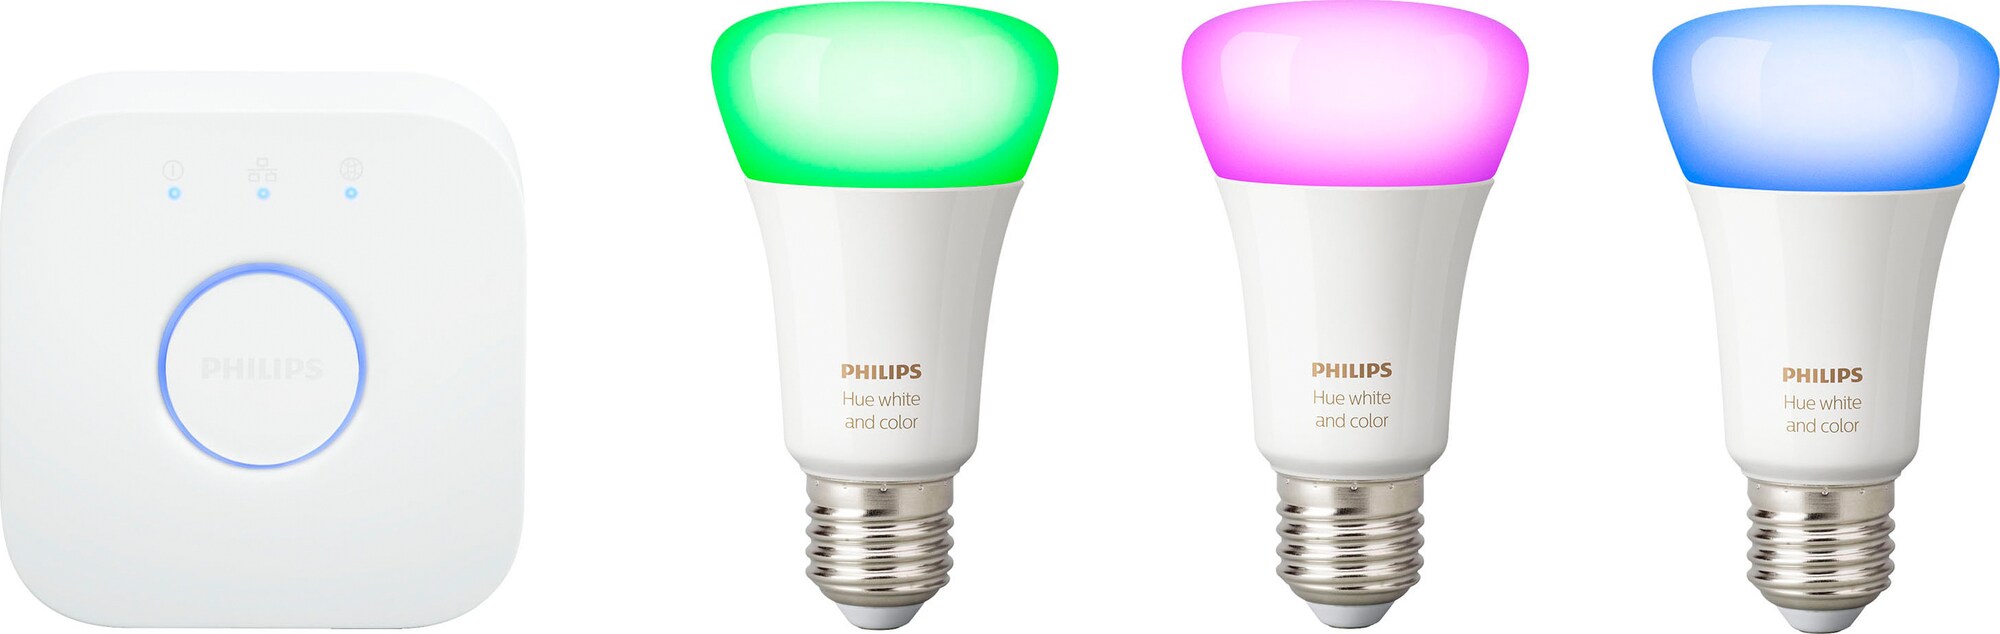 Köp LED-lampor, glödlampor och halogenlampor här - Elgiganten